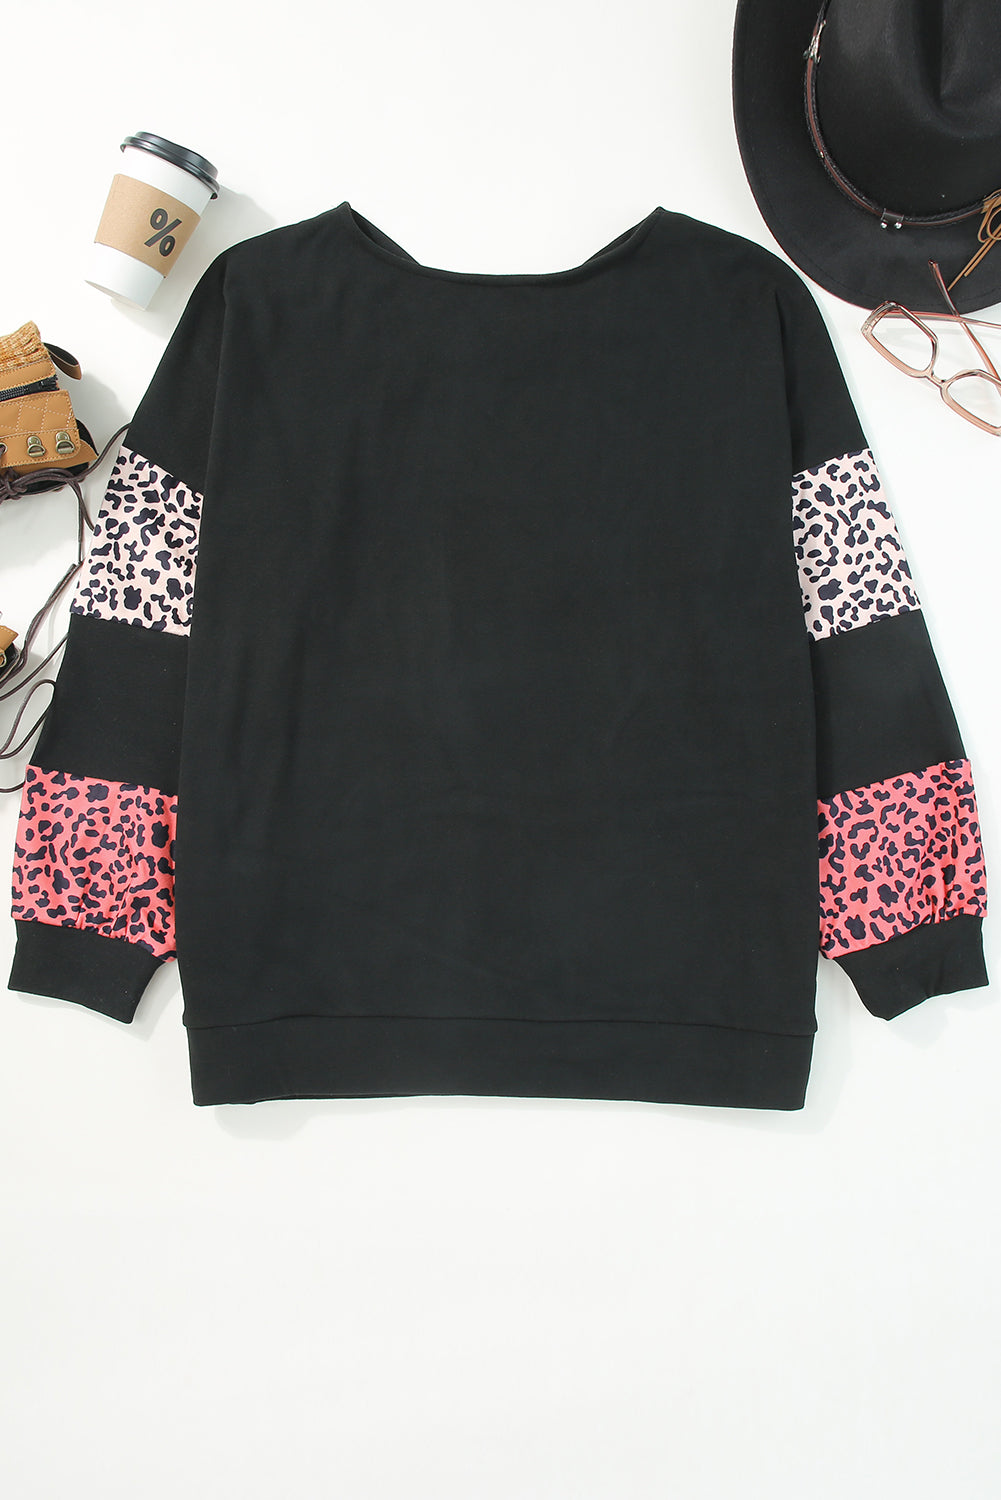 Crna majica s ovratnikom s remenčićima i patchworkom u obliku leoparda